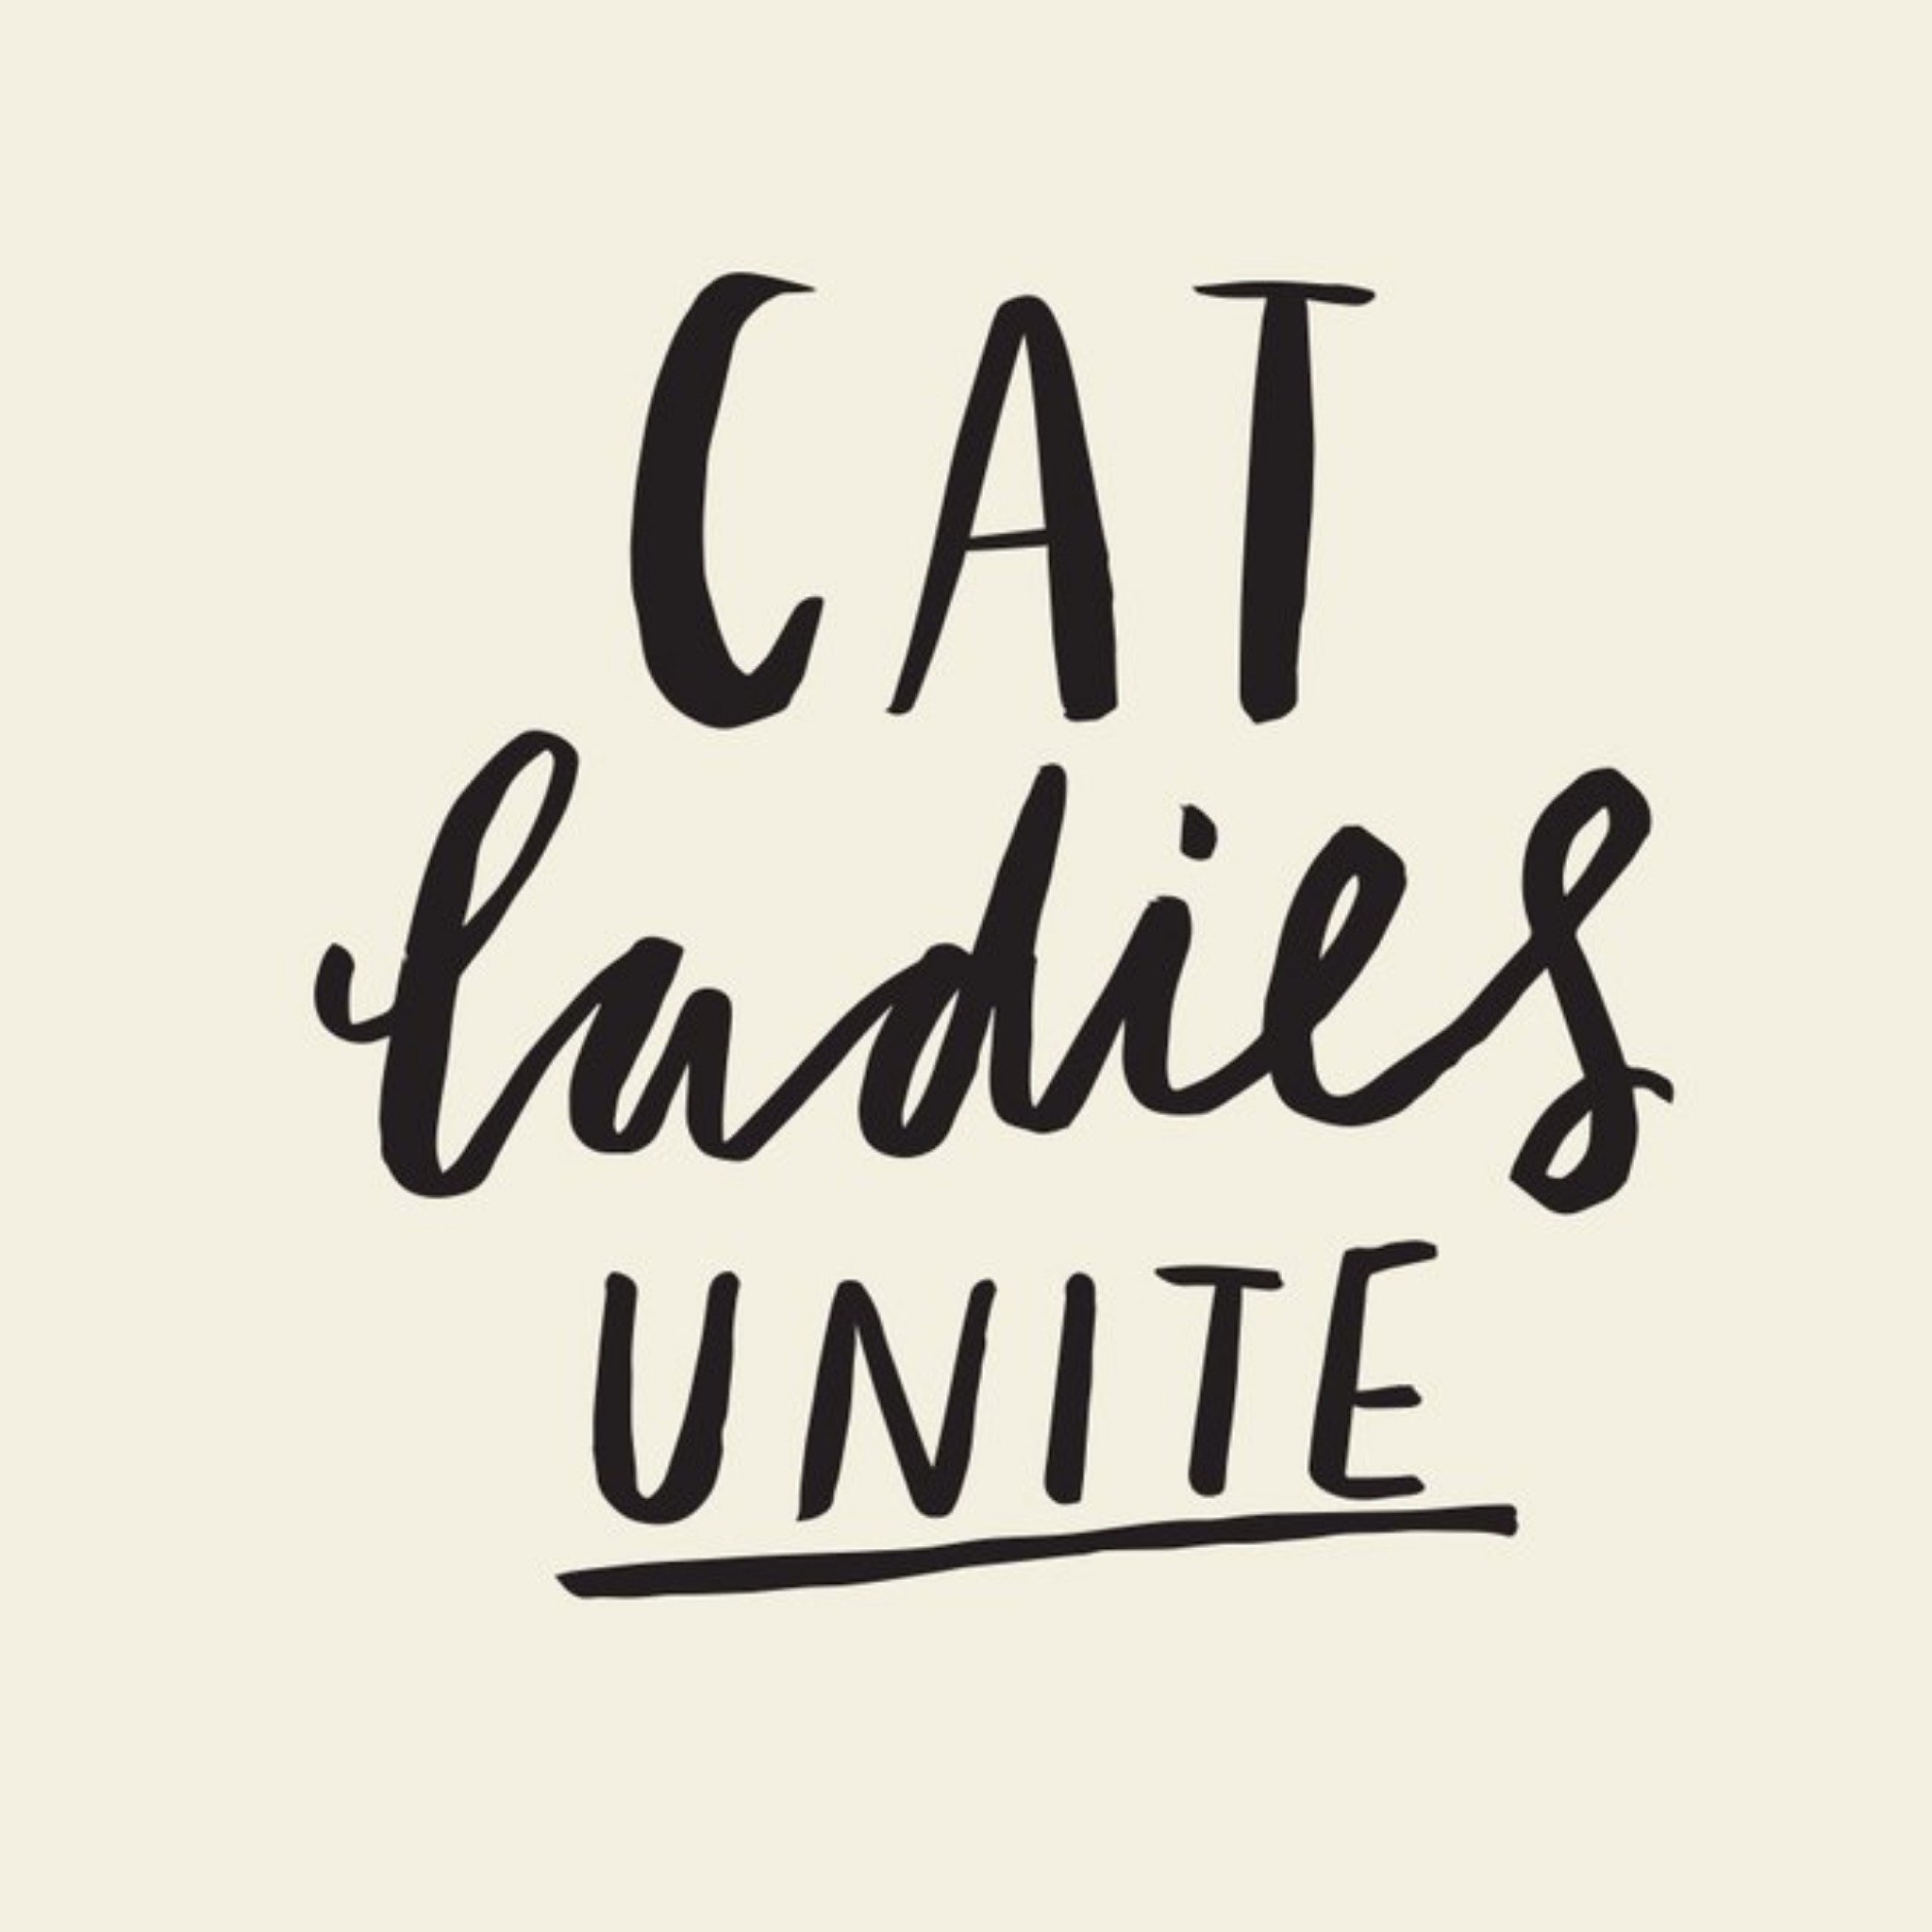 Moonpig Cat Ladies Unite Square Card